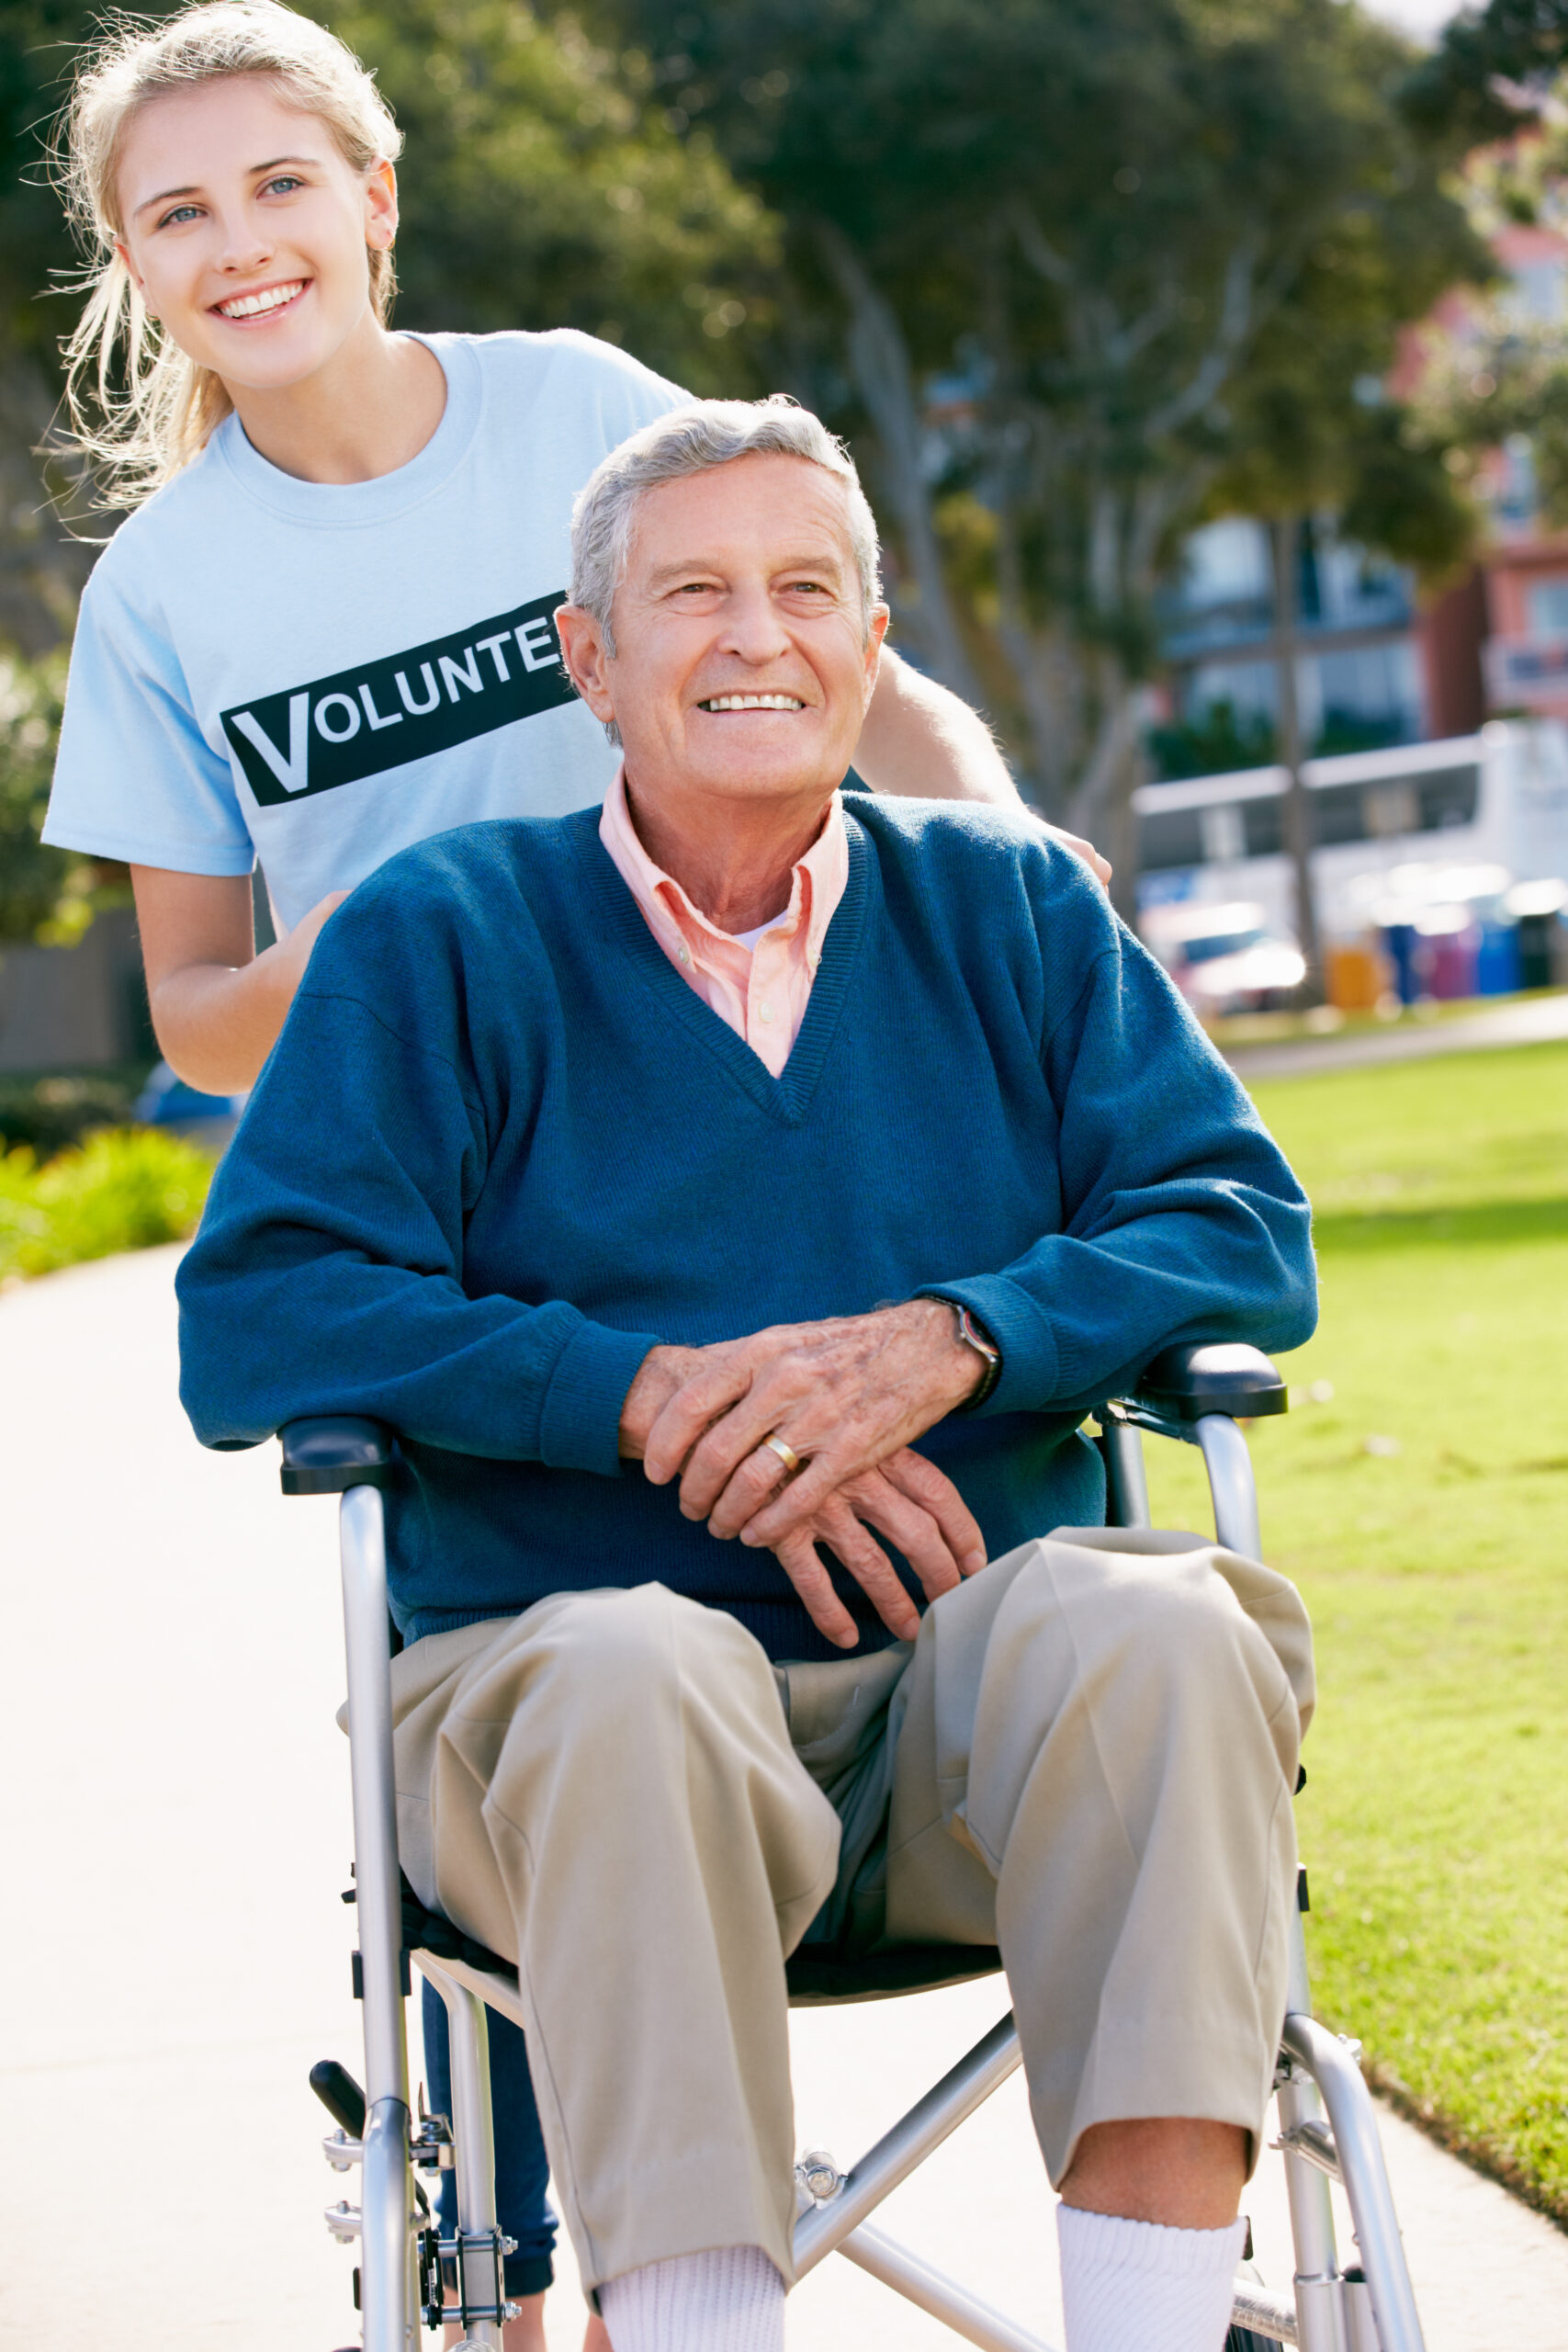 Female volunteer assisting elderly man.